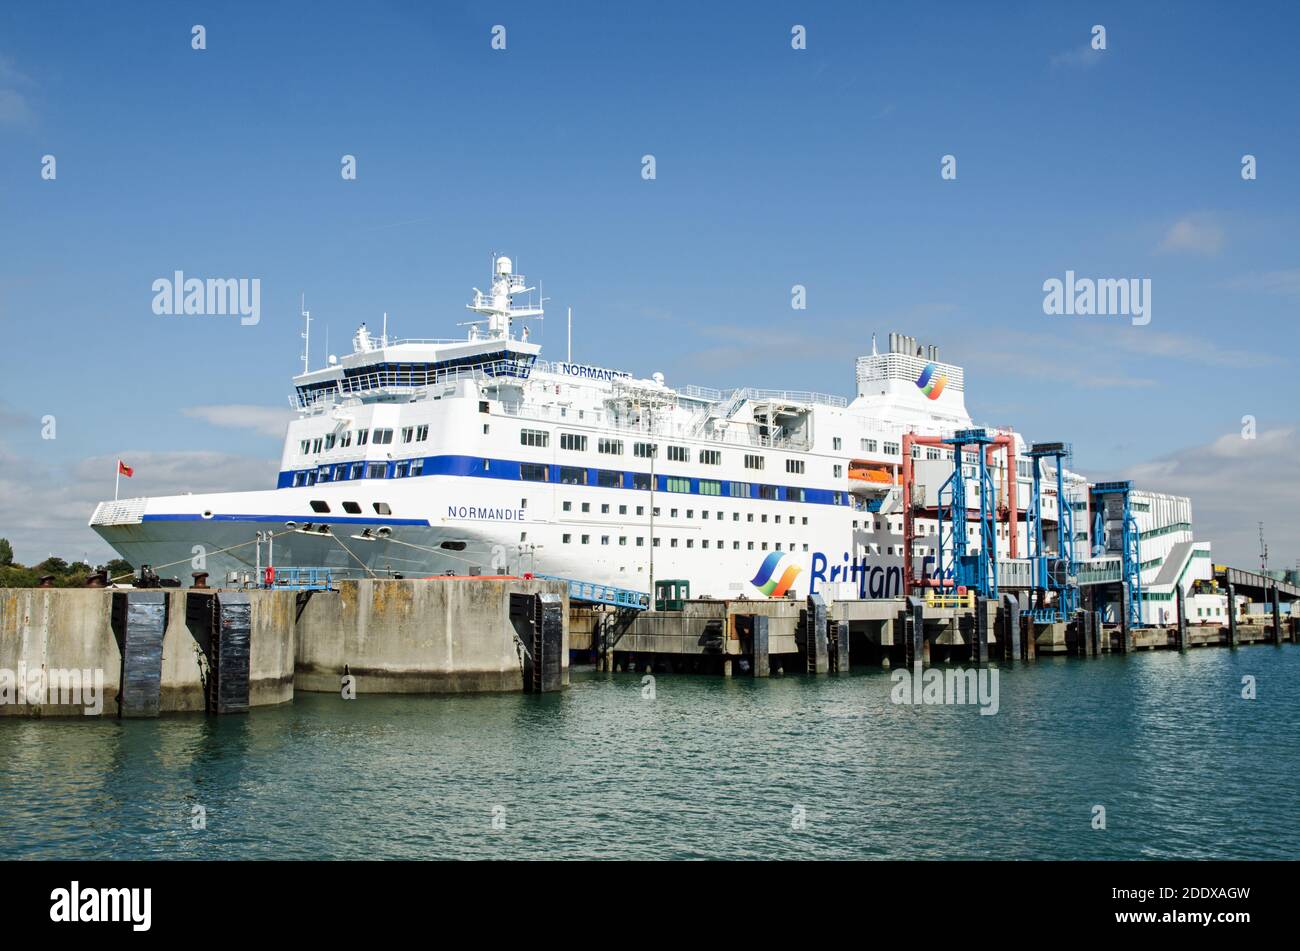 Portsmouth, Großbritannien - 8. September 2020: Seitenansicht der großen Passagierfähre Normandie von Brittany Ferries, die im Hafen von Portsmouth an einem sonnigen s festgemacht ist Stockfoto